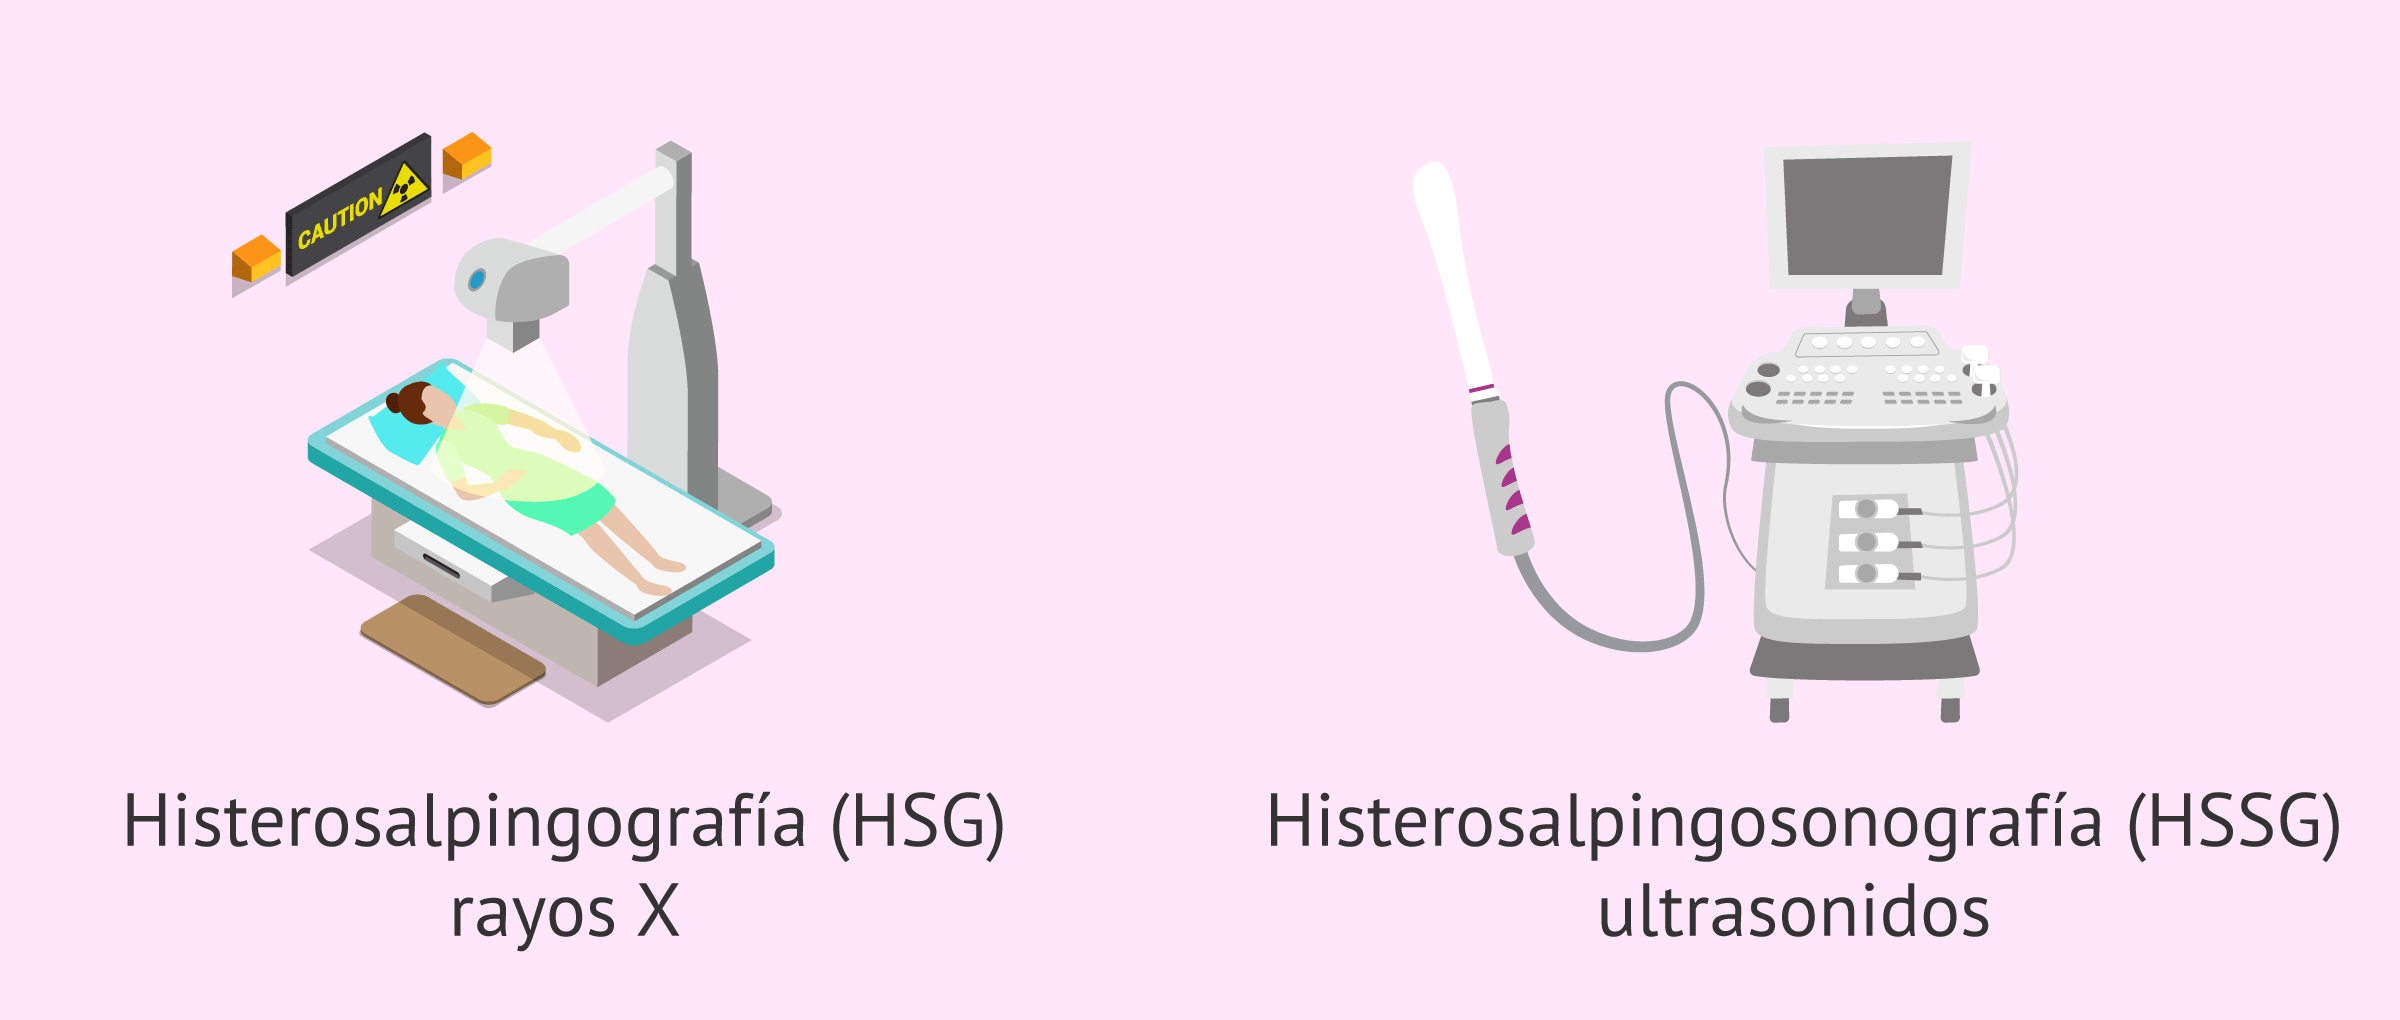 Tipos de histerosalpingografía